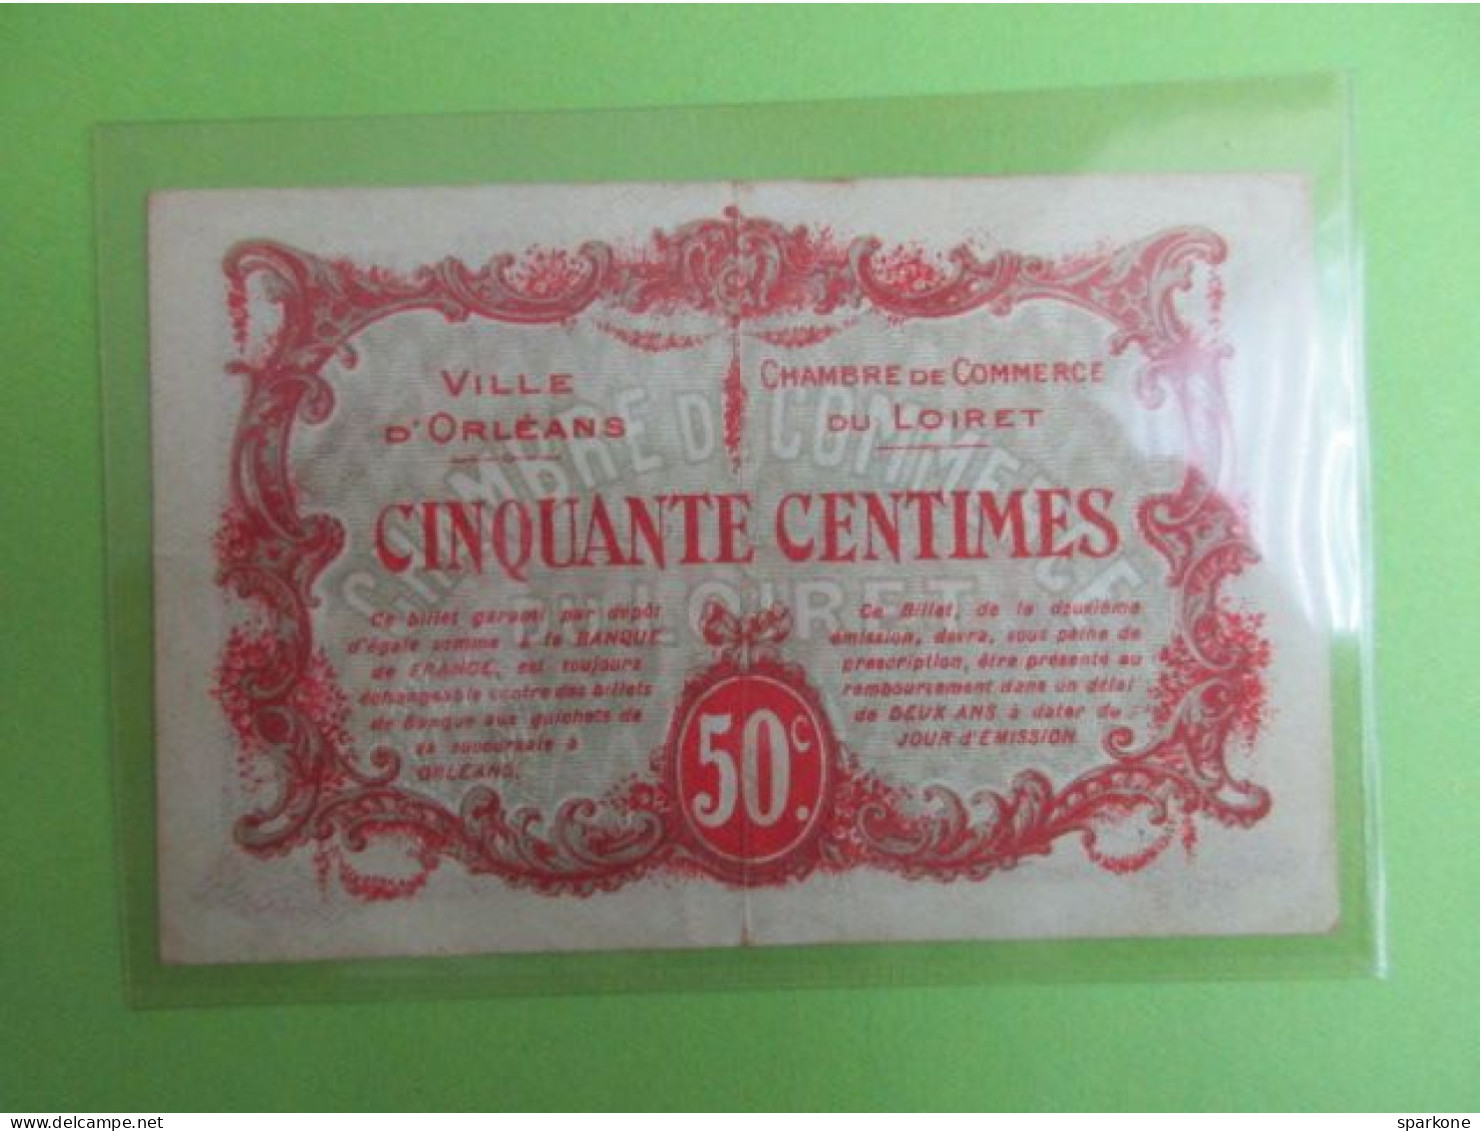 Chambre De Commerce Et Ville D'Orléans - Billet De 50 Centimes - 2° émission - 2 Avril 1916 - Handelskammer